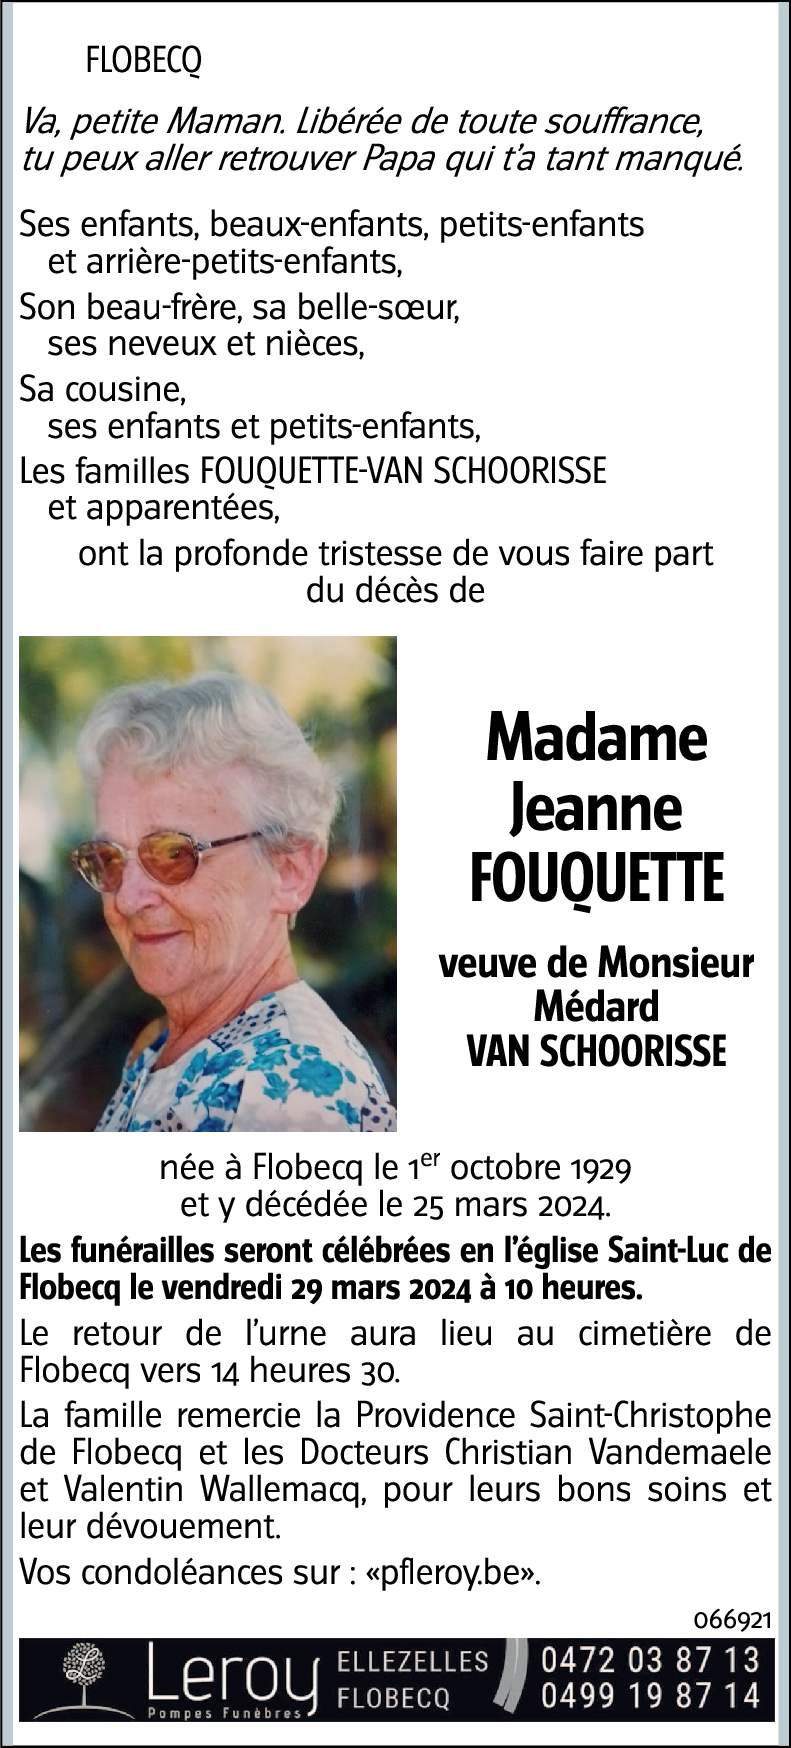 Jeanne Fouquette